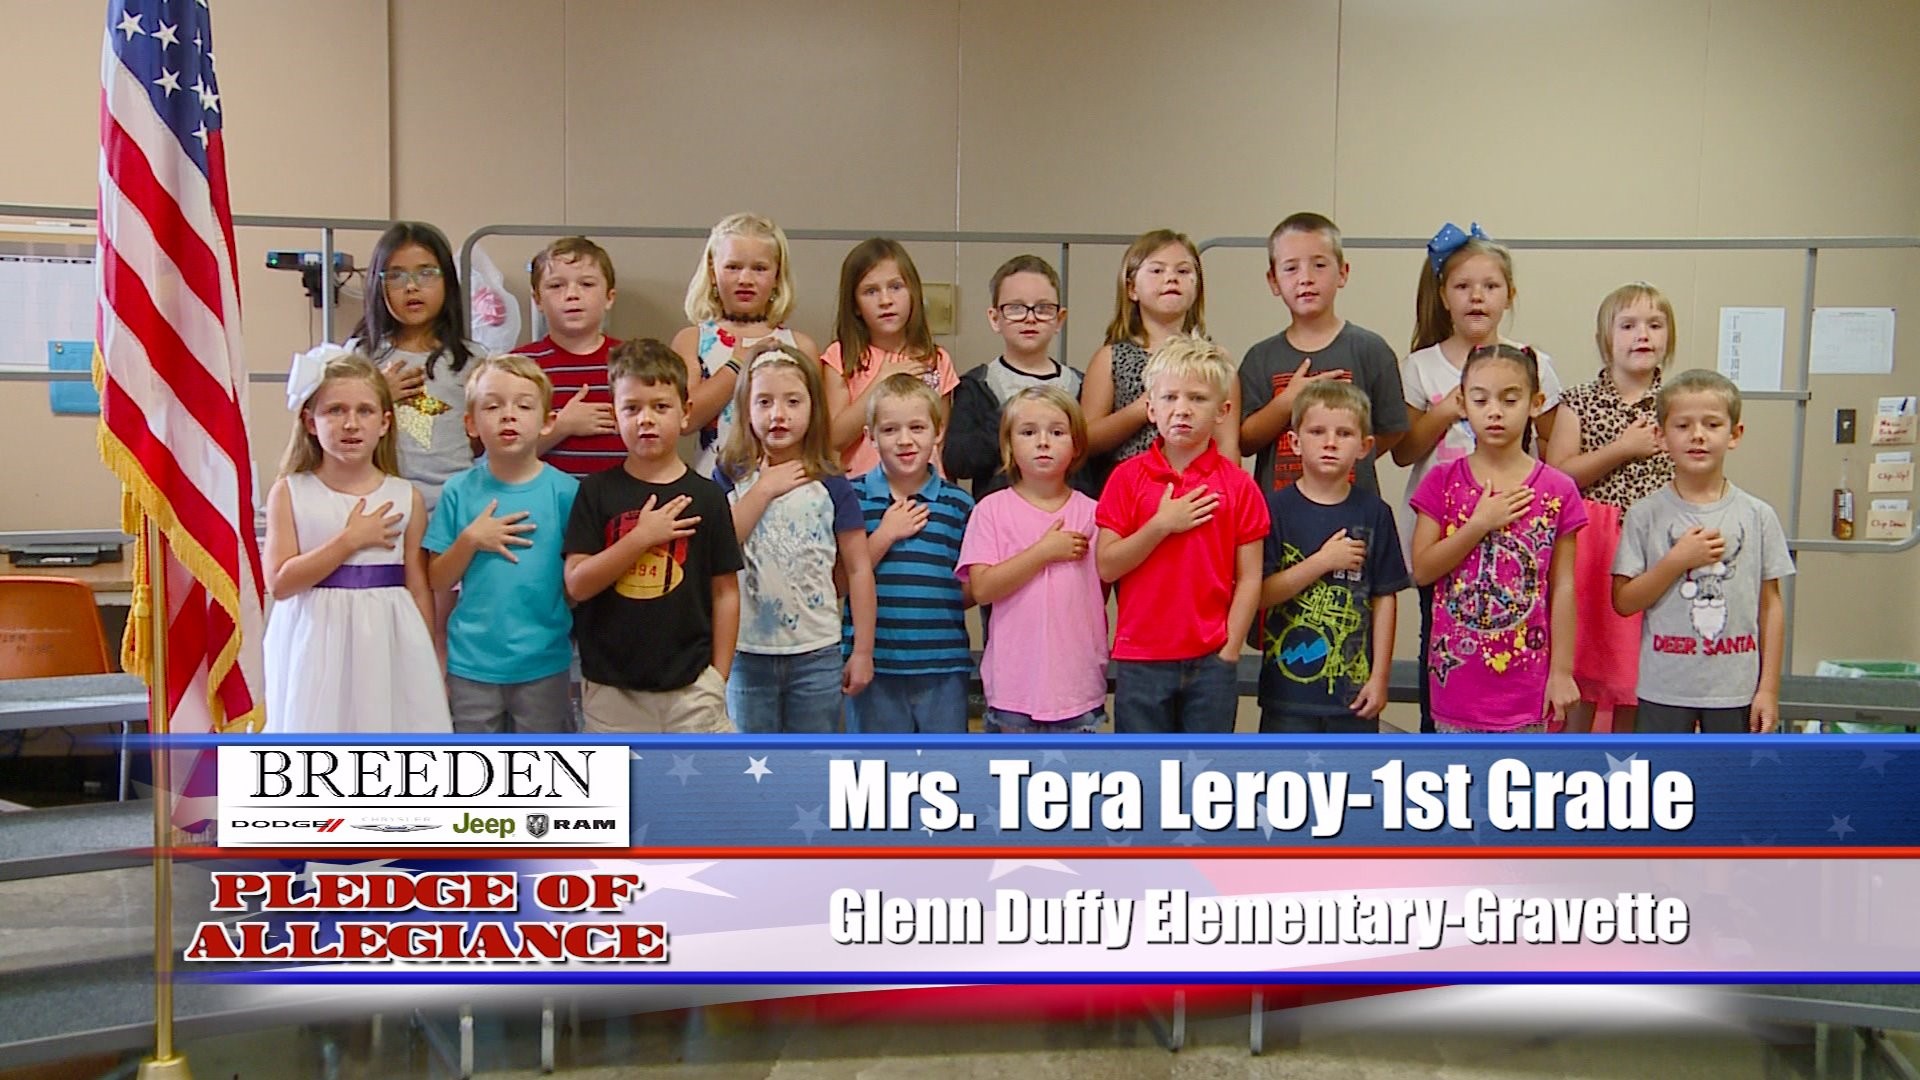 Mrs. Tera Leroy  1st Grade at Glenn Duffy Elementary, Gravette